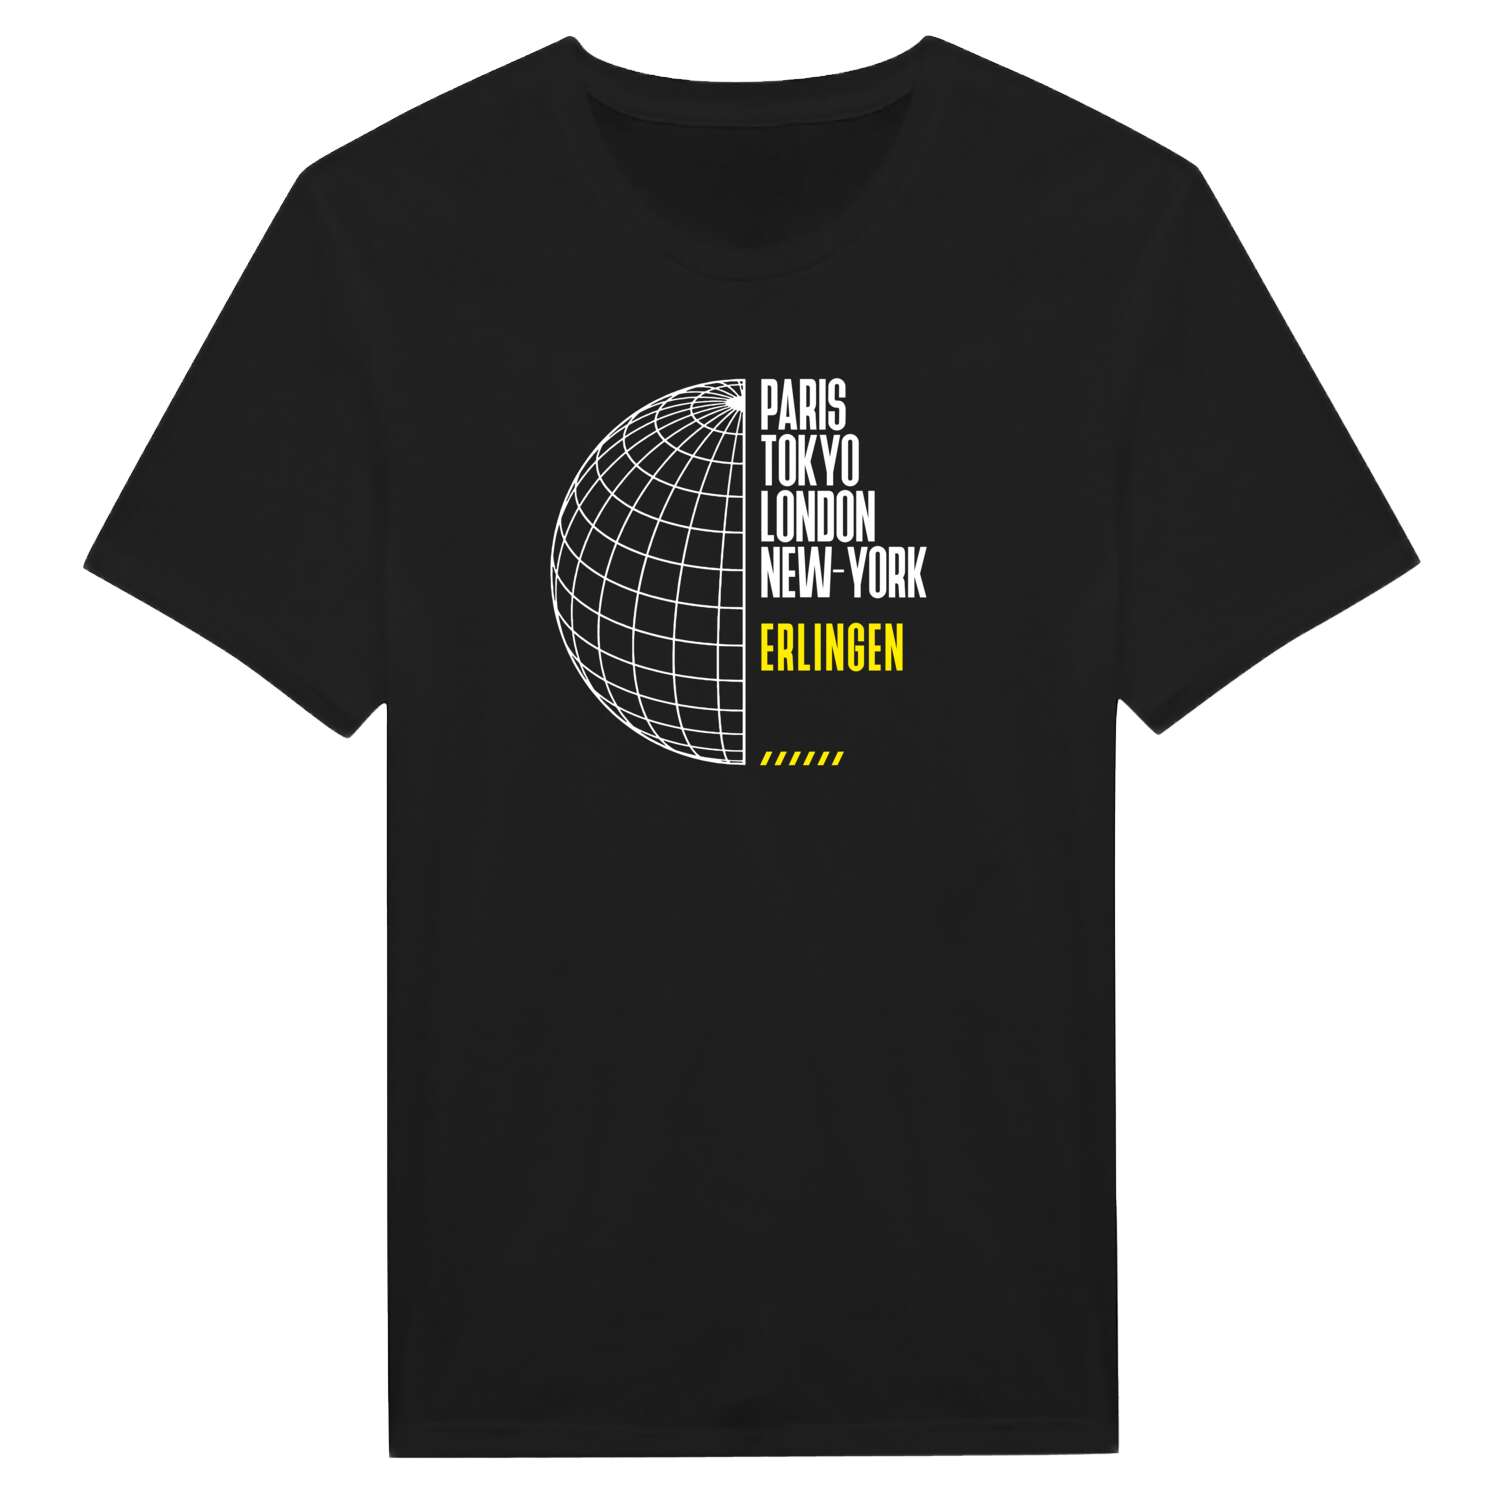 Erlingen T-Shirt »Paris Tokyo London«